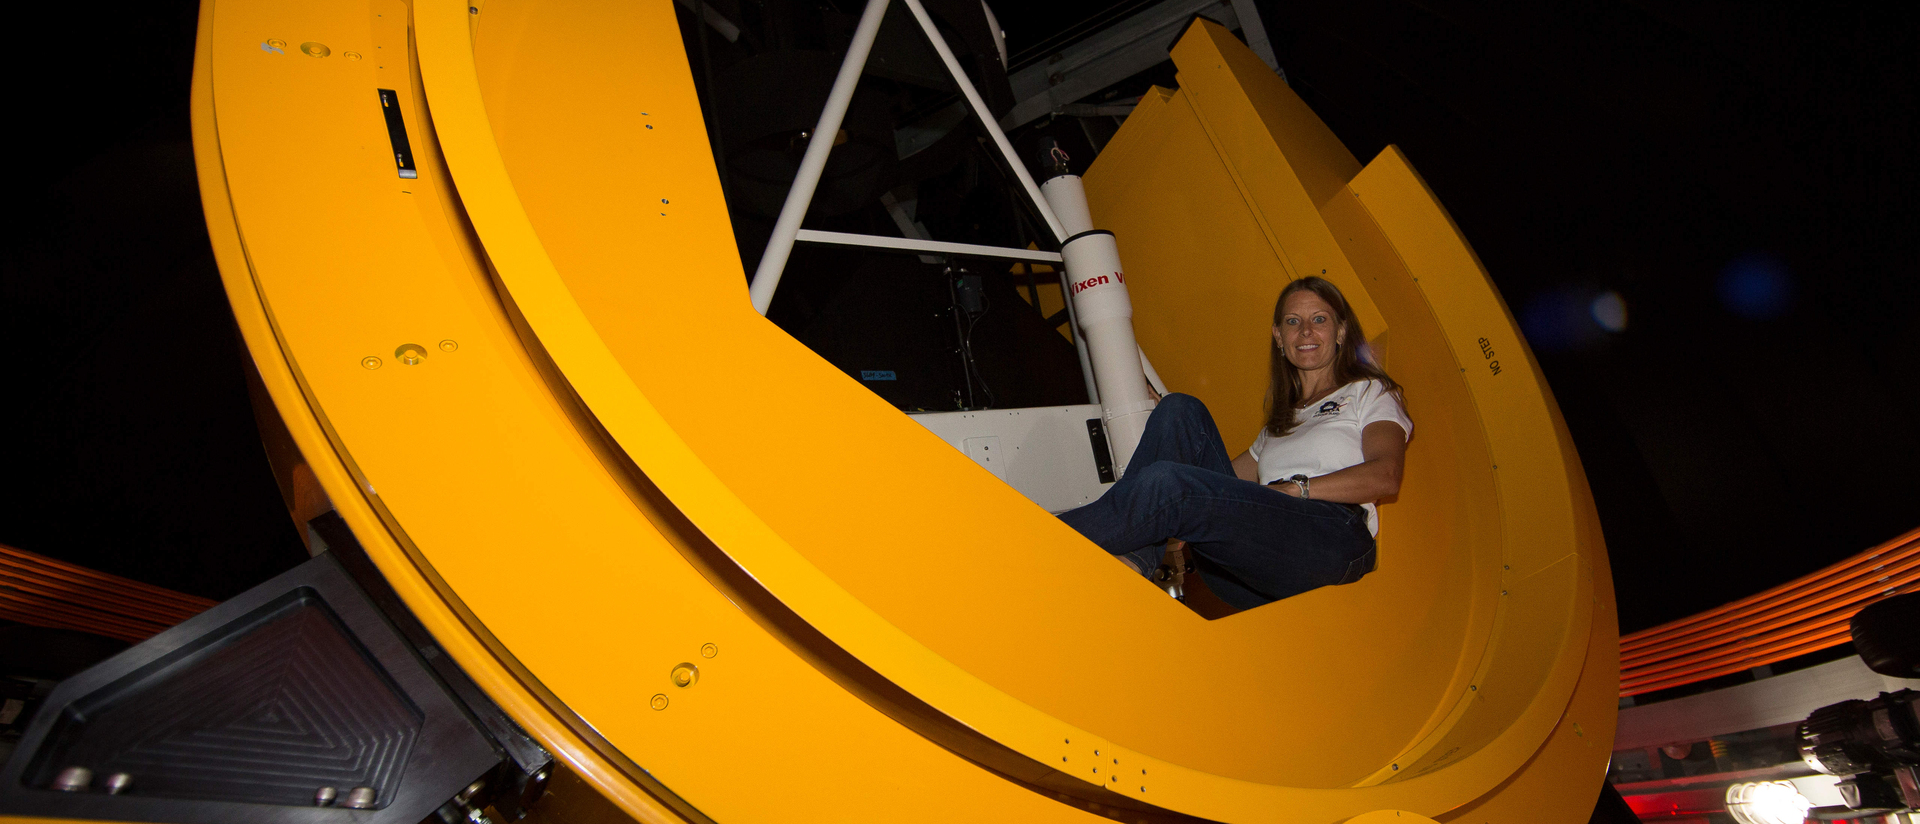 Alumna Susan Lederer in telescope she built for NASA